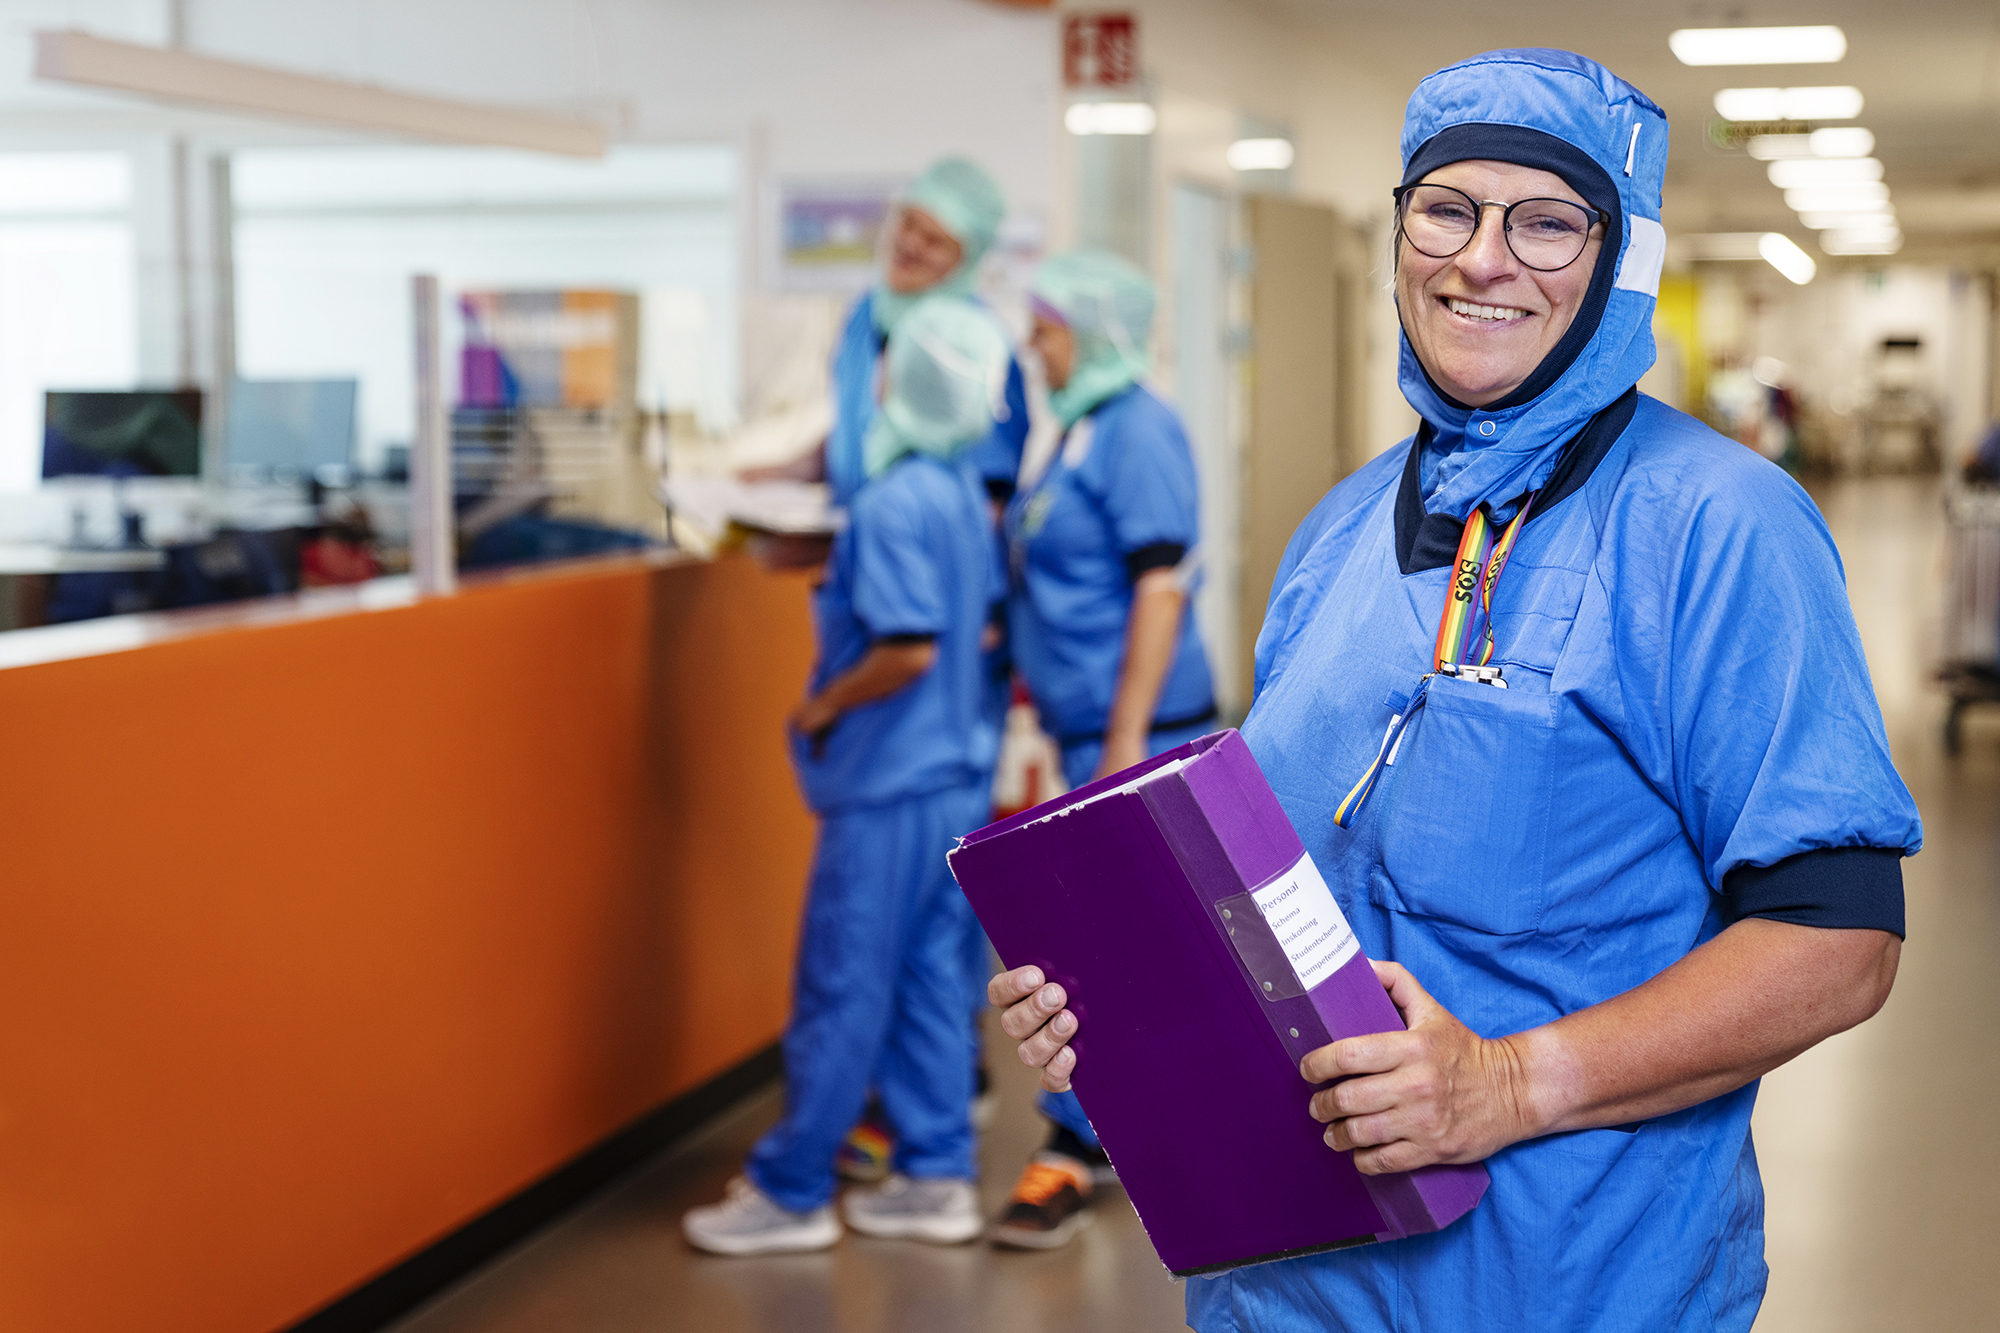 Veronica Dahlgren, vårdenhetschef på ortopedoperation, står i en sjukhuskorridor iklädd blå operationskläder och ler med en lila pärm i händerna.